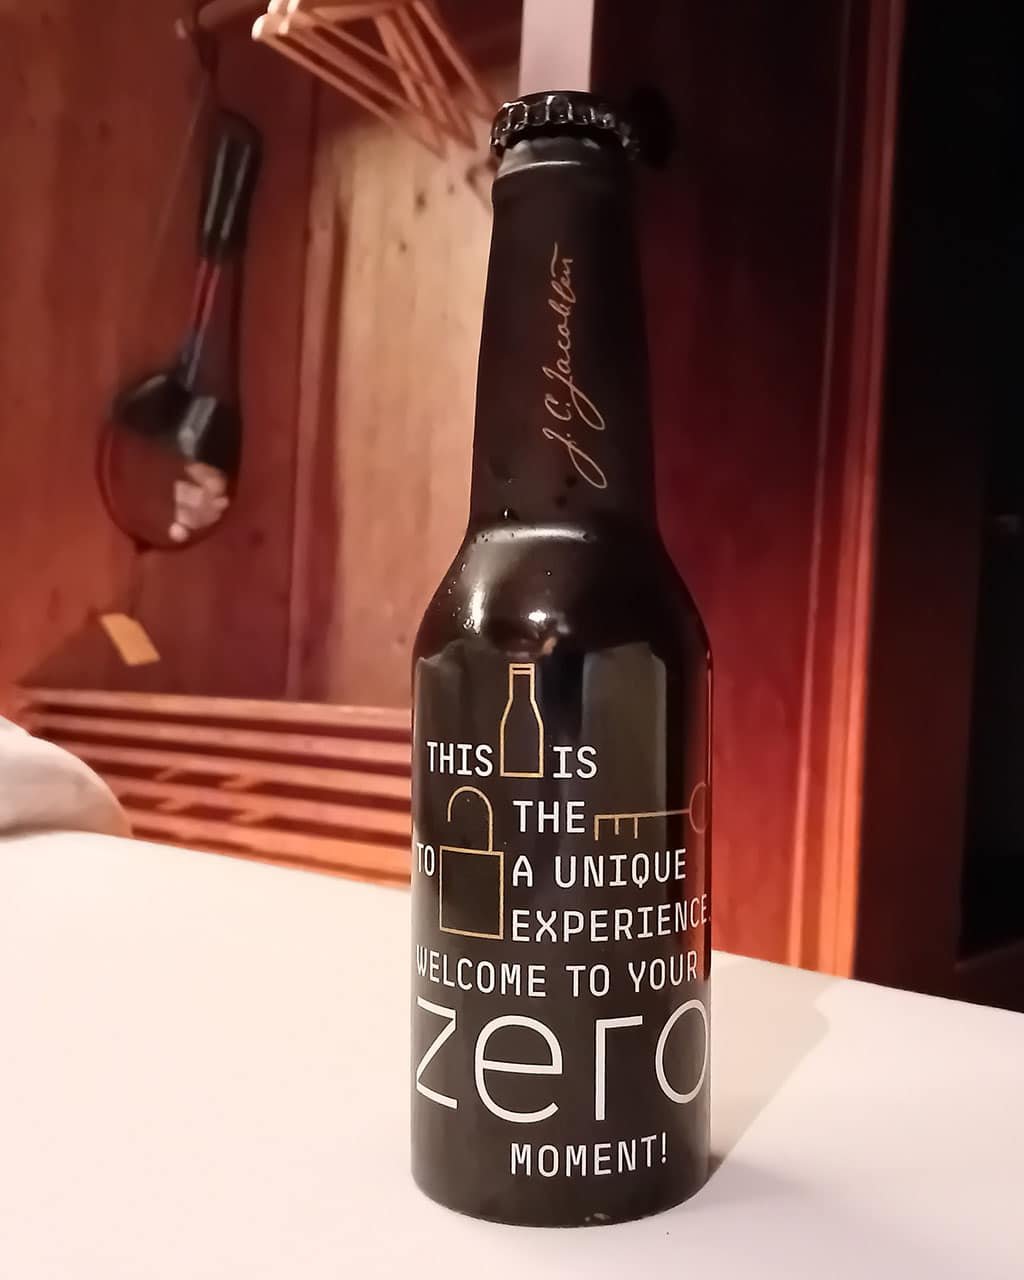 Bière fraîche à l'arrivée à Zero, Coimbra